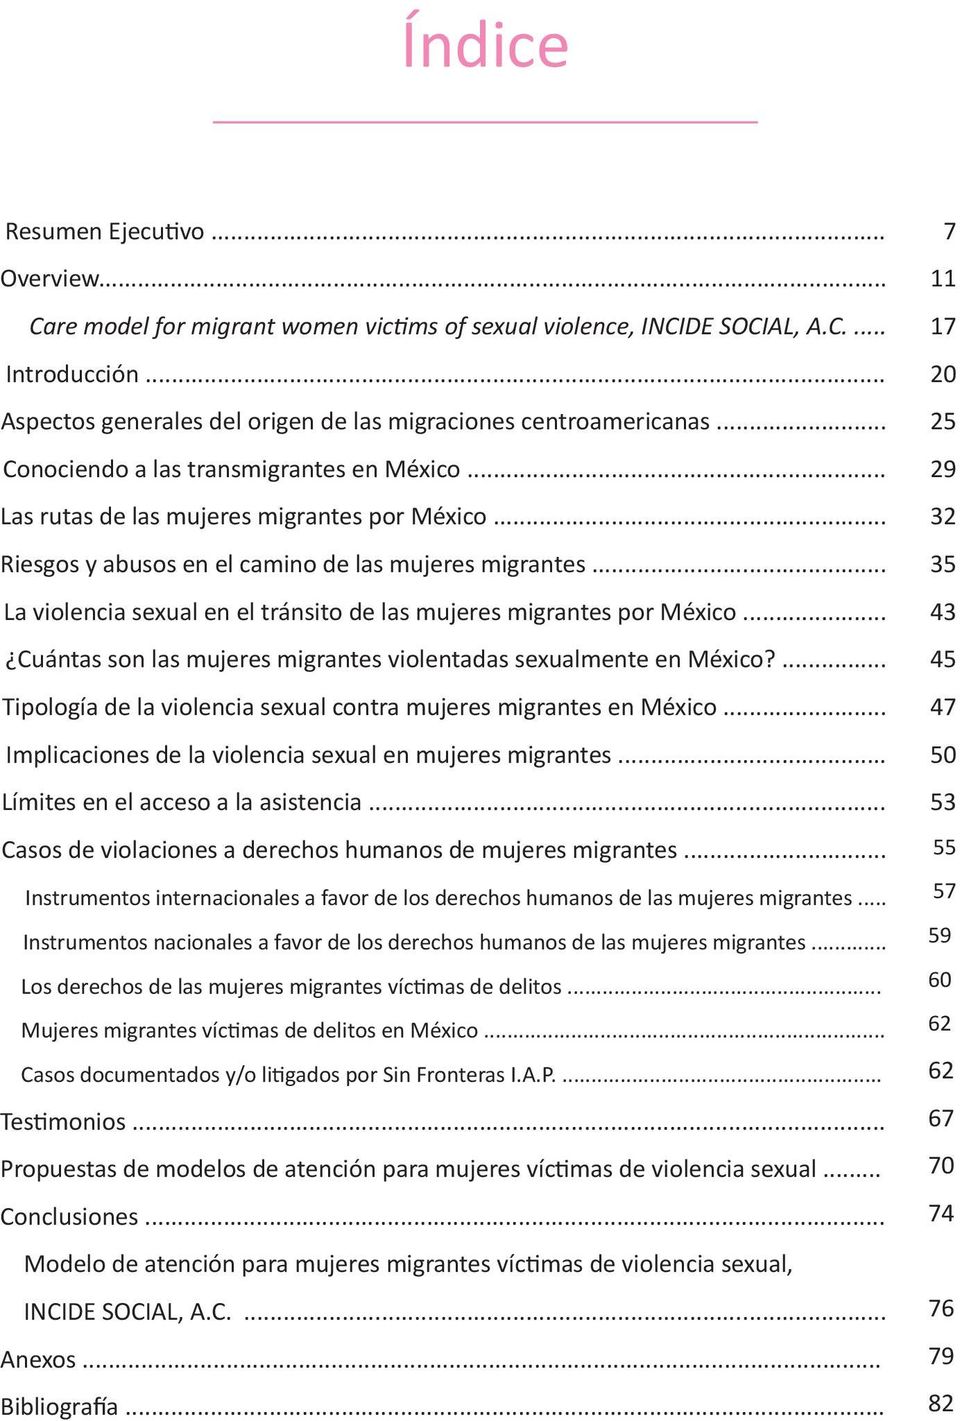 .. La violencia sexual en el tránsito de las mujeres migrantes por México... Cuántas son las mujeres migrantes violentadas sexualmente en México?